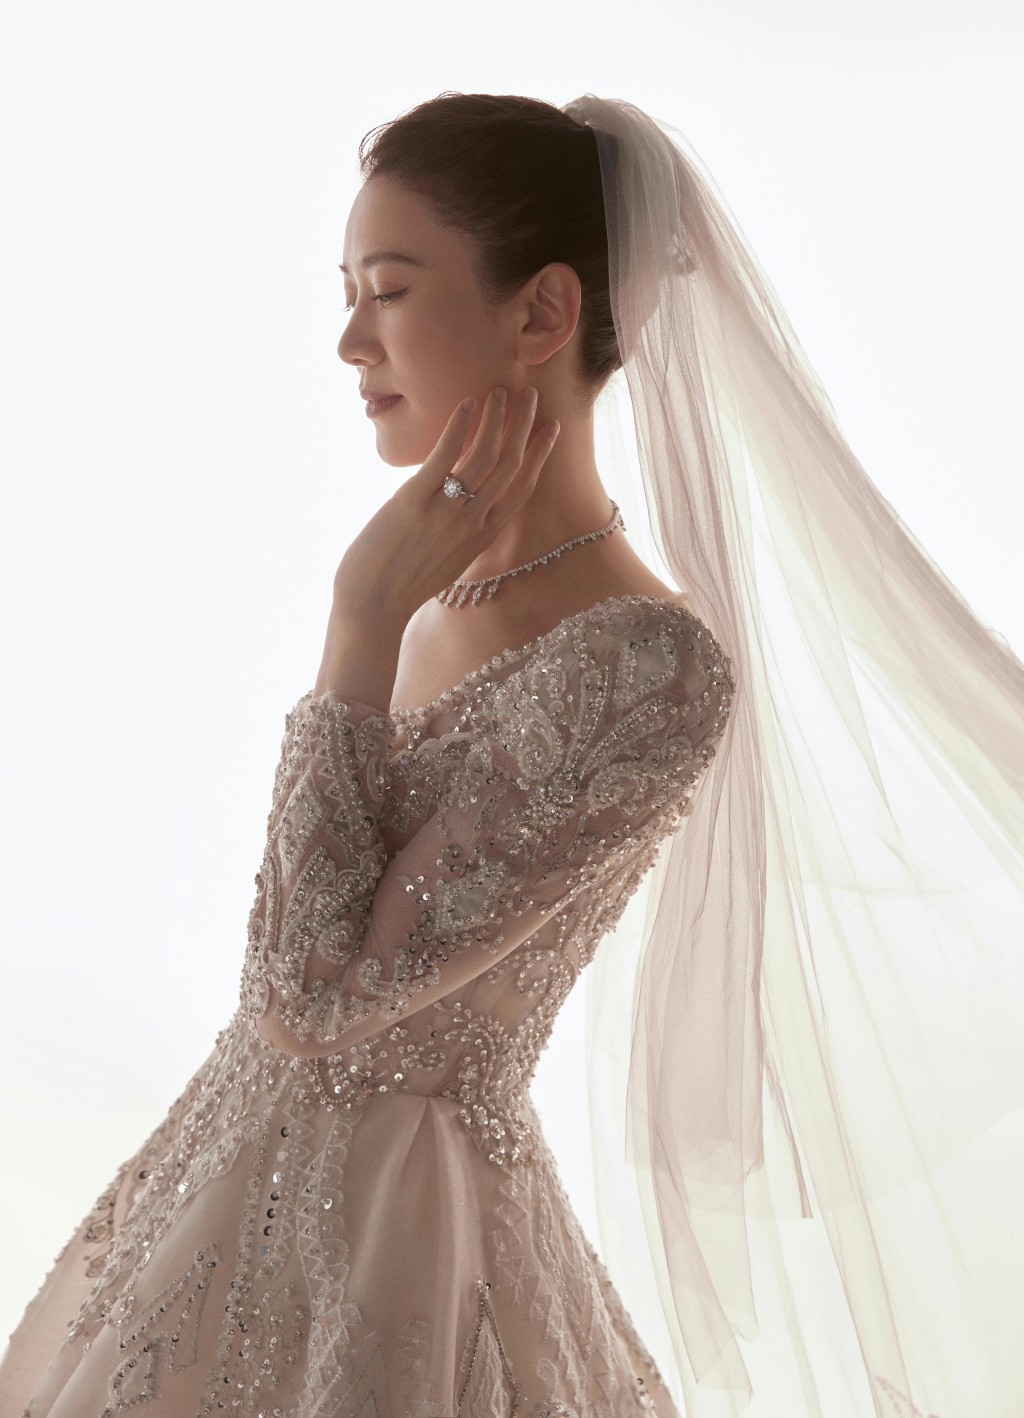 袁咏仪日前披婚纱上台补办婚礼。